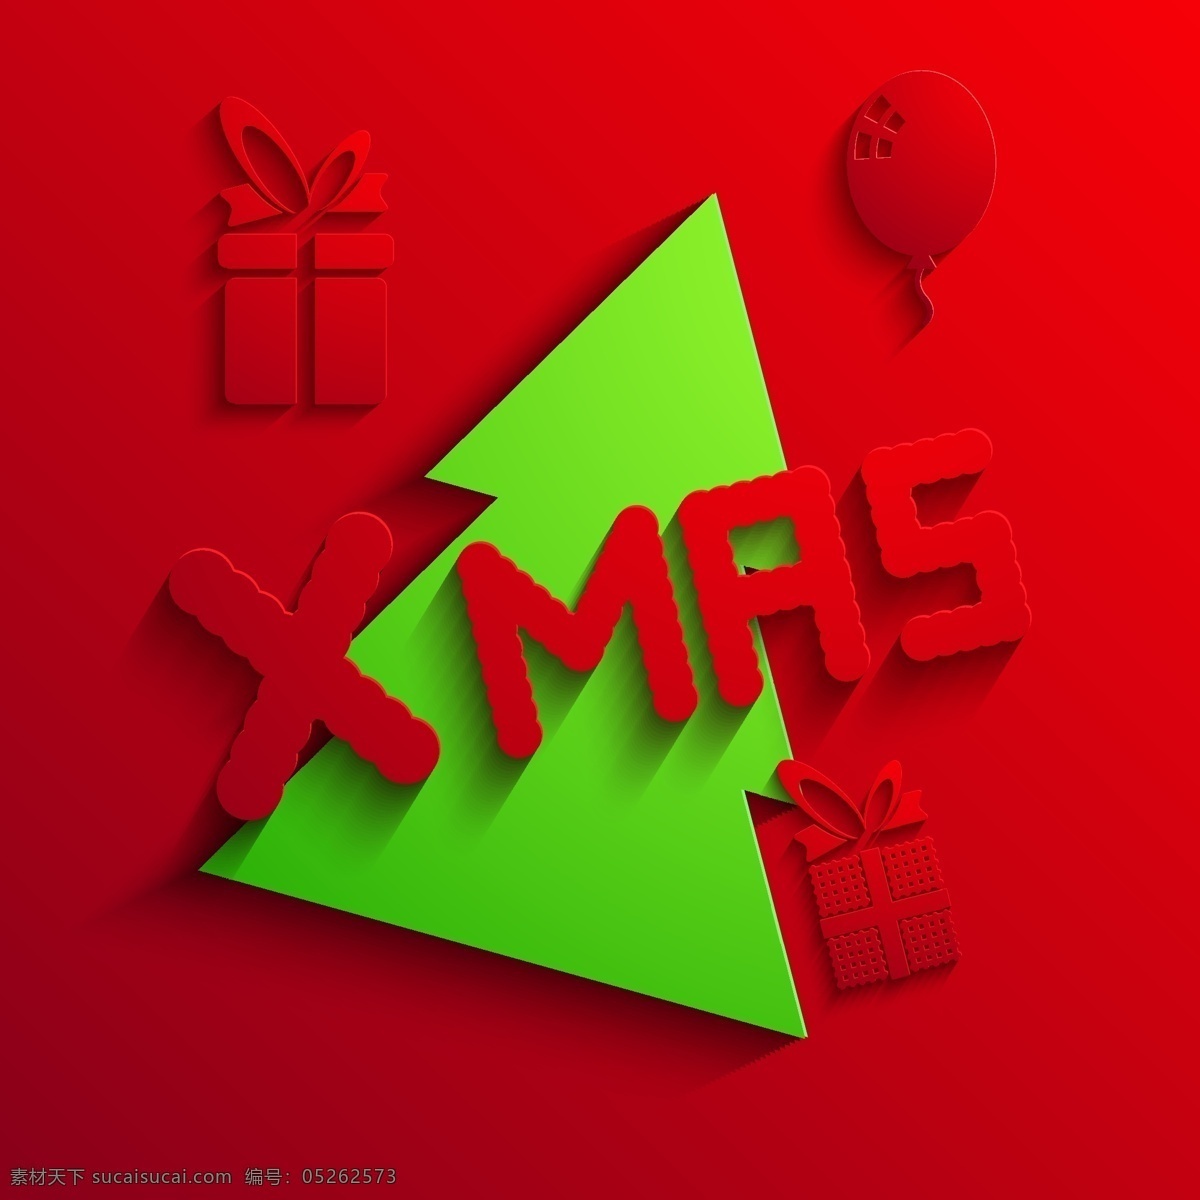 2014 圣诞 红 背景 矢量 集 背景矢量 红色背景 芦苇 圣诞节 矢量背景 矢量图 其他矢量图